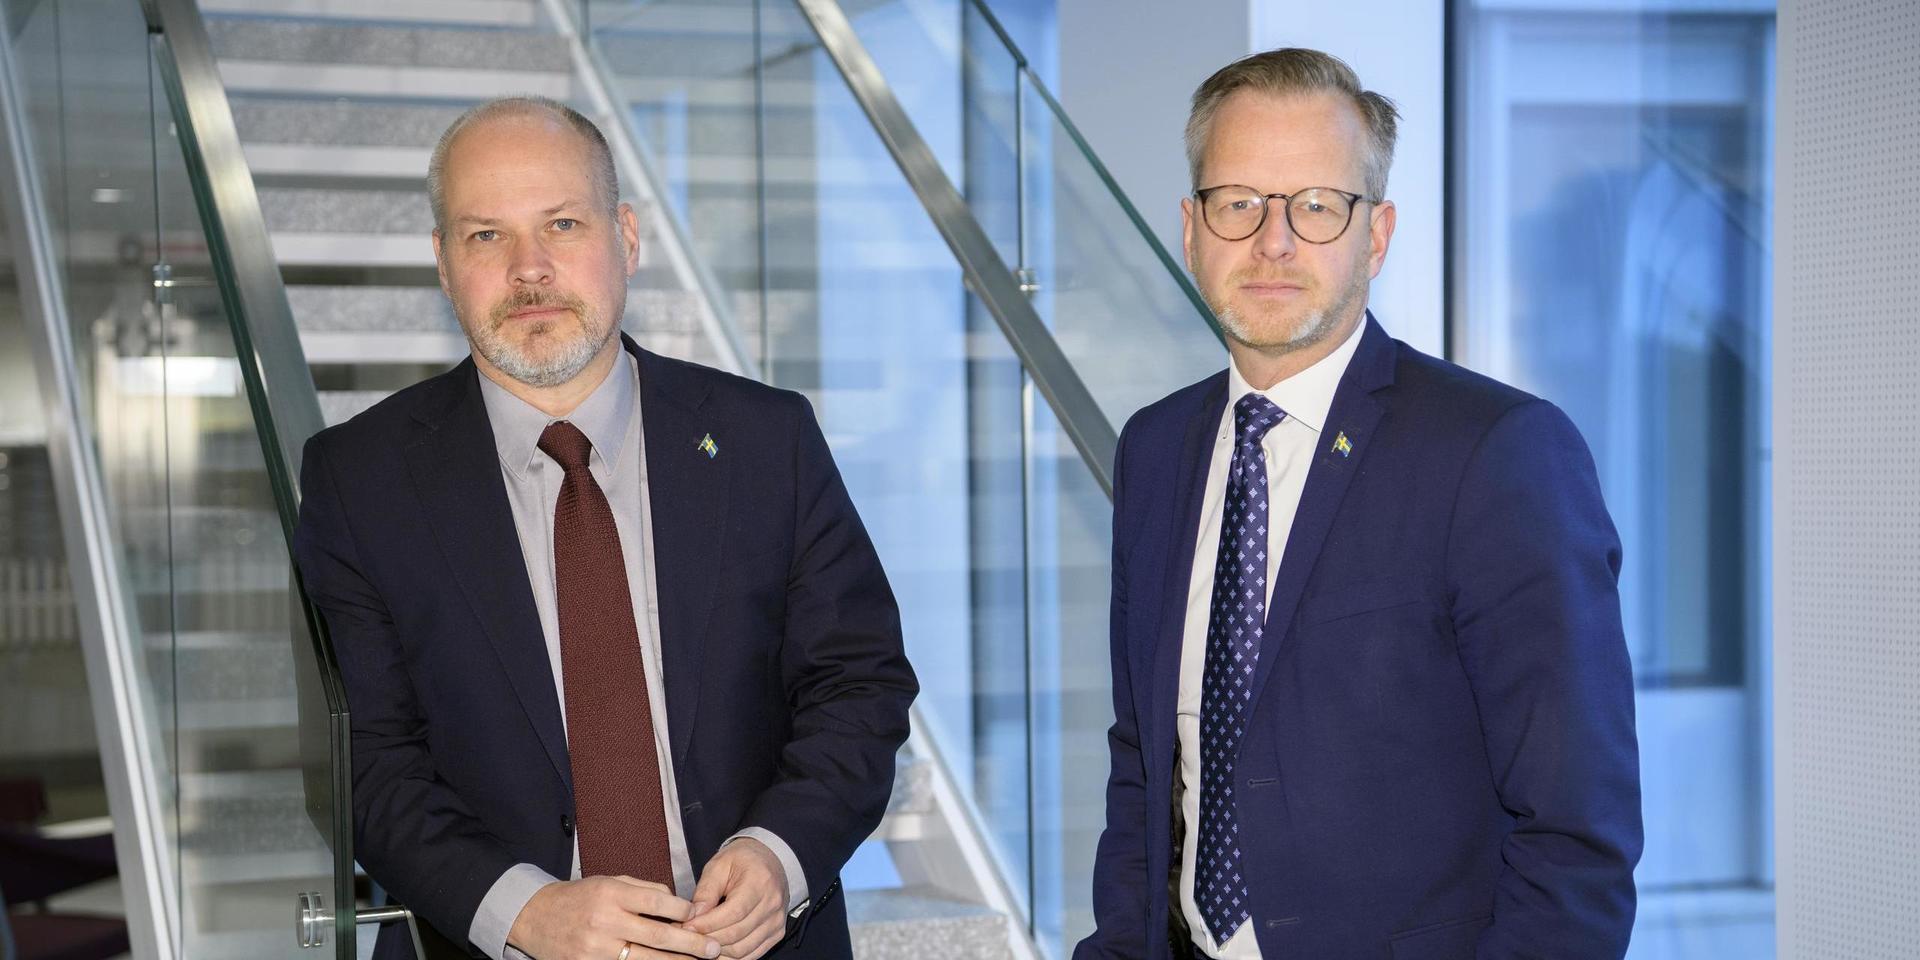 Justitieminister Morgan Johansson och inrikesminister Mikael Damberg har båda skaffat skägg på senare tid.